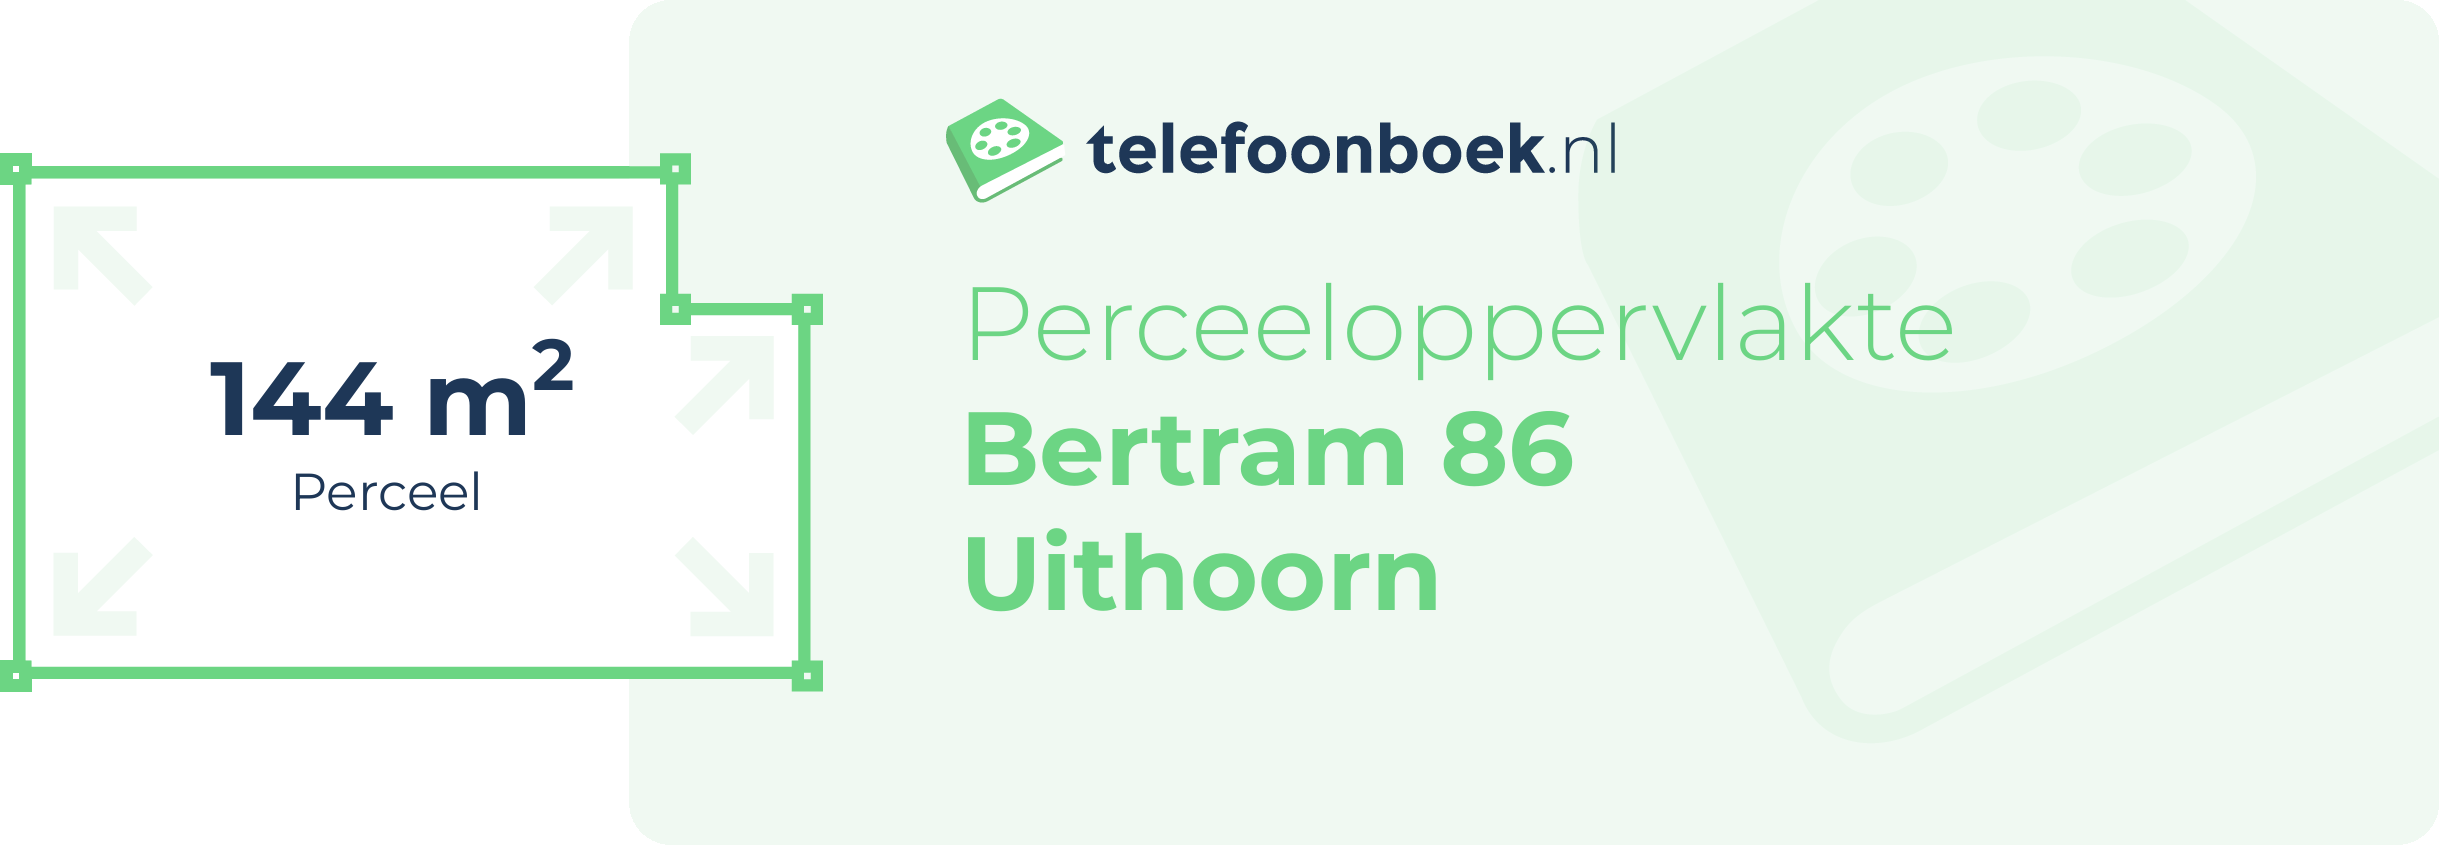 Perceeloppervlakte Bertram 86 Uithoorn